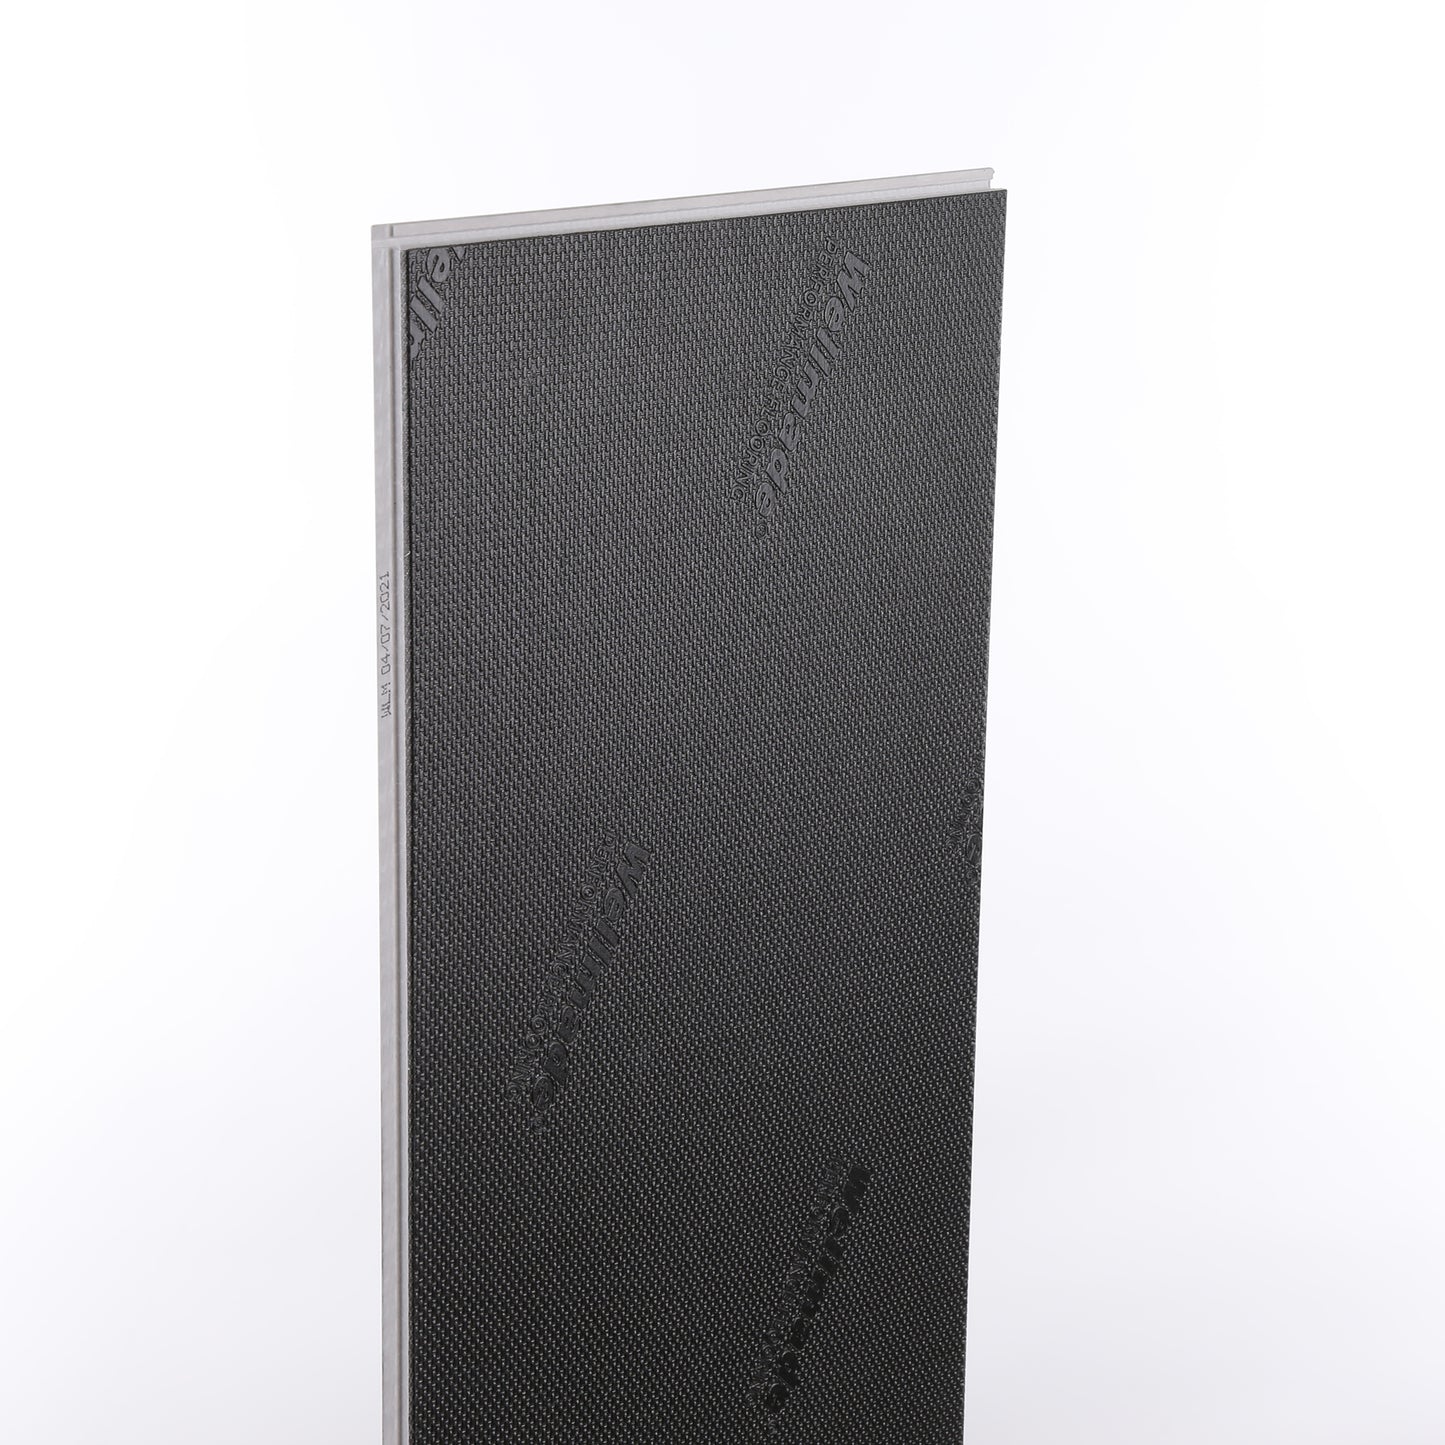 6mm Crème Brule HDPC® Waterproof Luxury Vinyl Plank Flooring 9.13 in. Wide x 60 in. Long